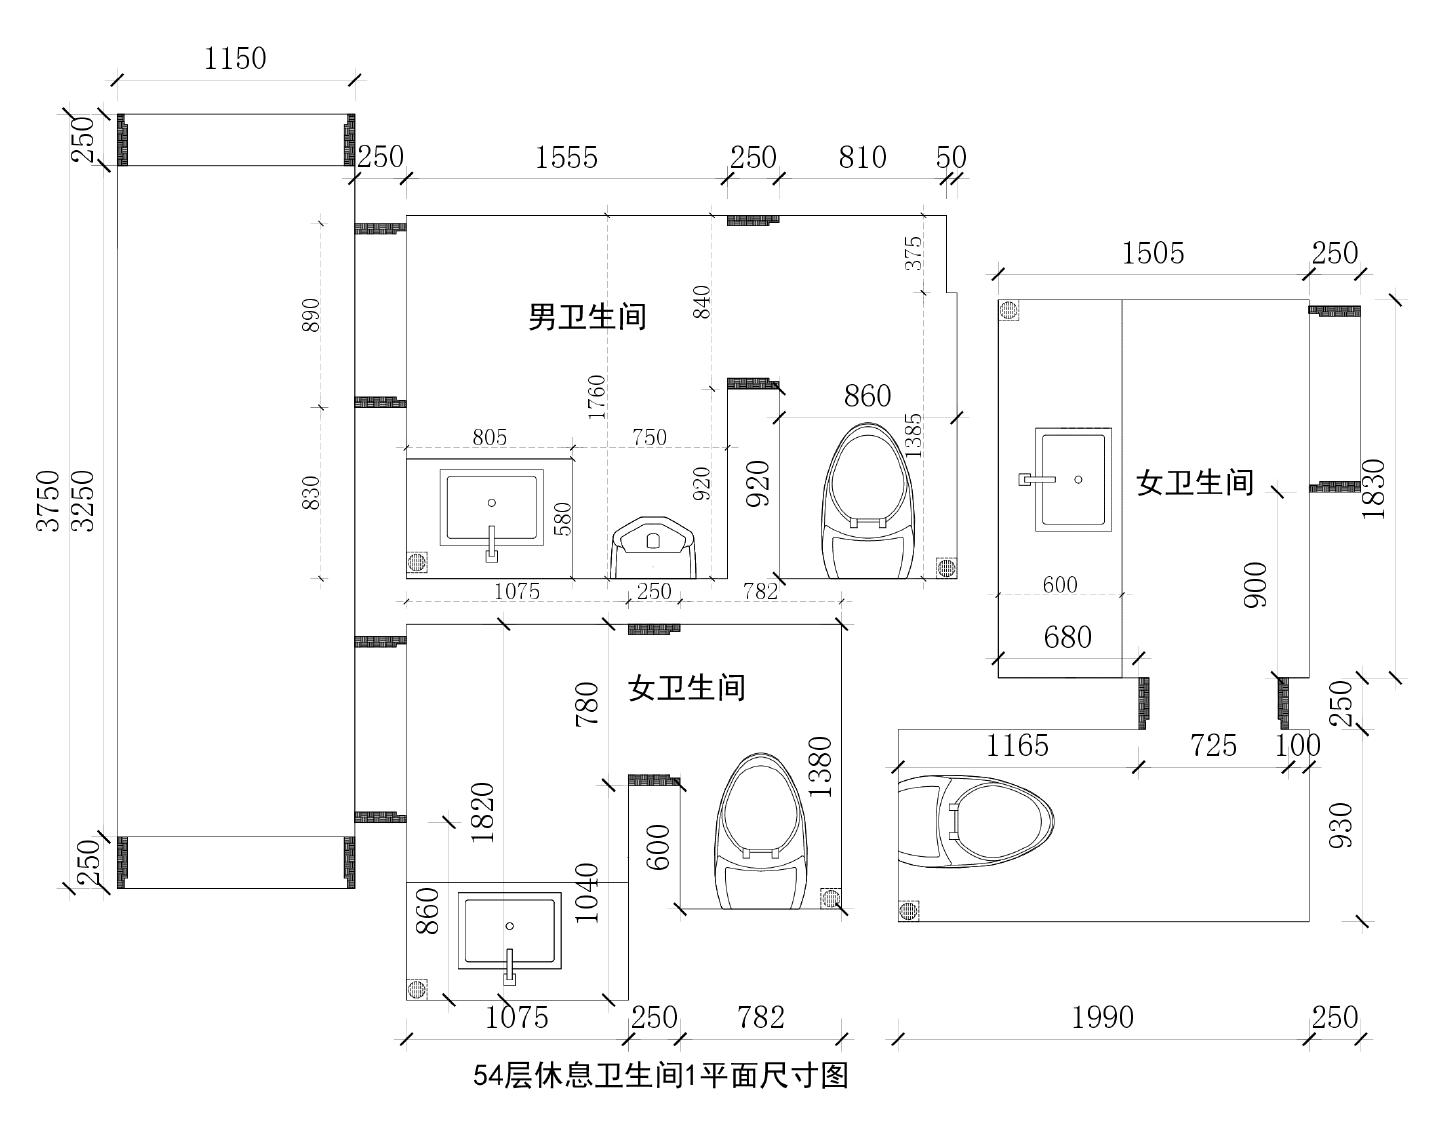 南昌绿地某邑酒店 54F10,   紫峰54层石材排版图